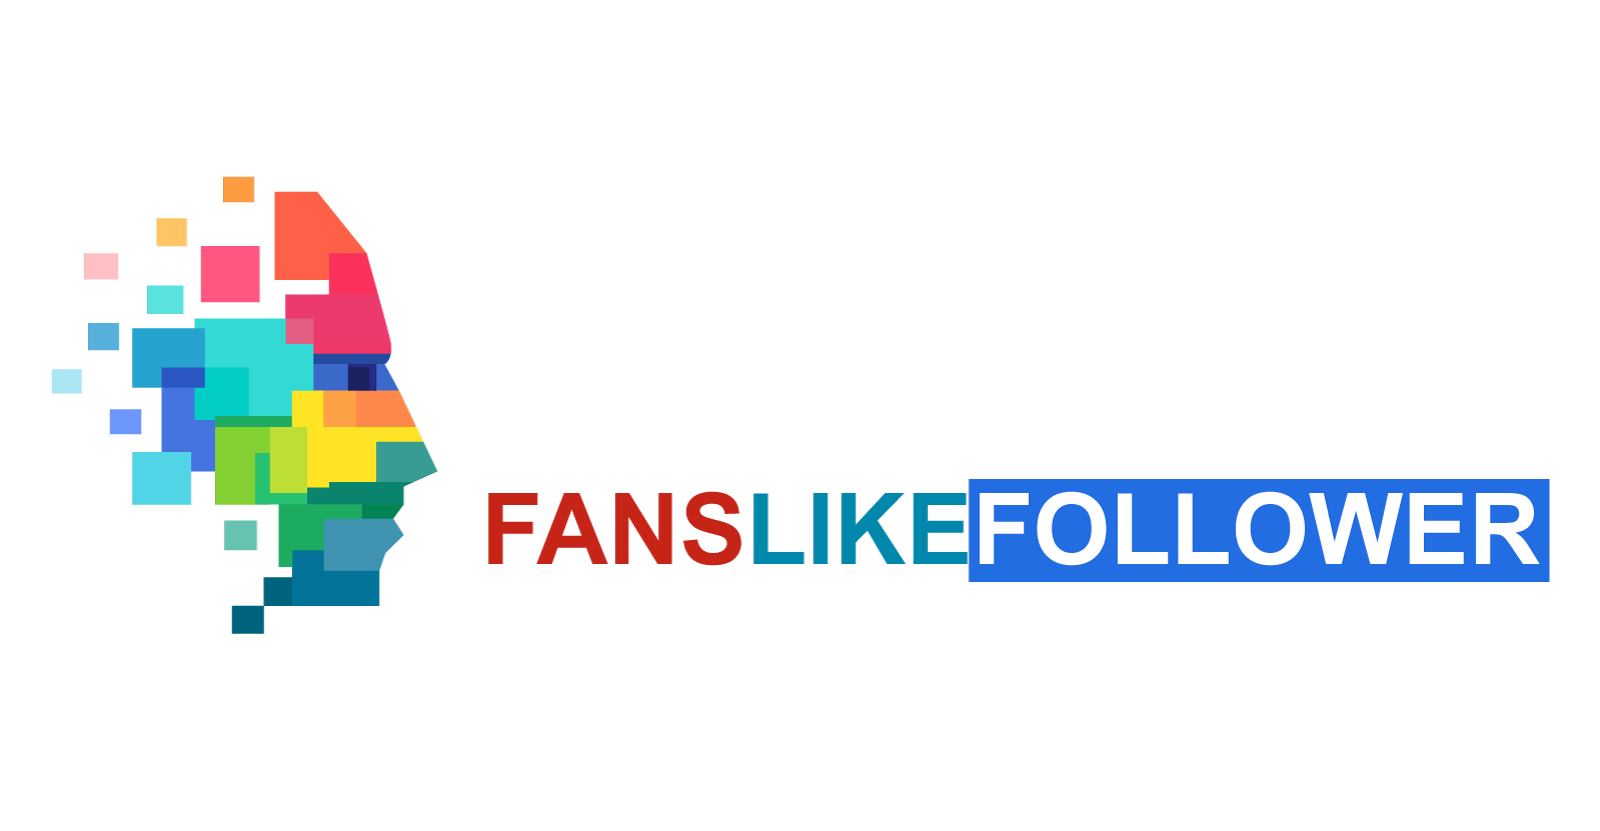 FansLikeFollower